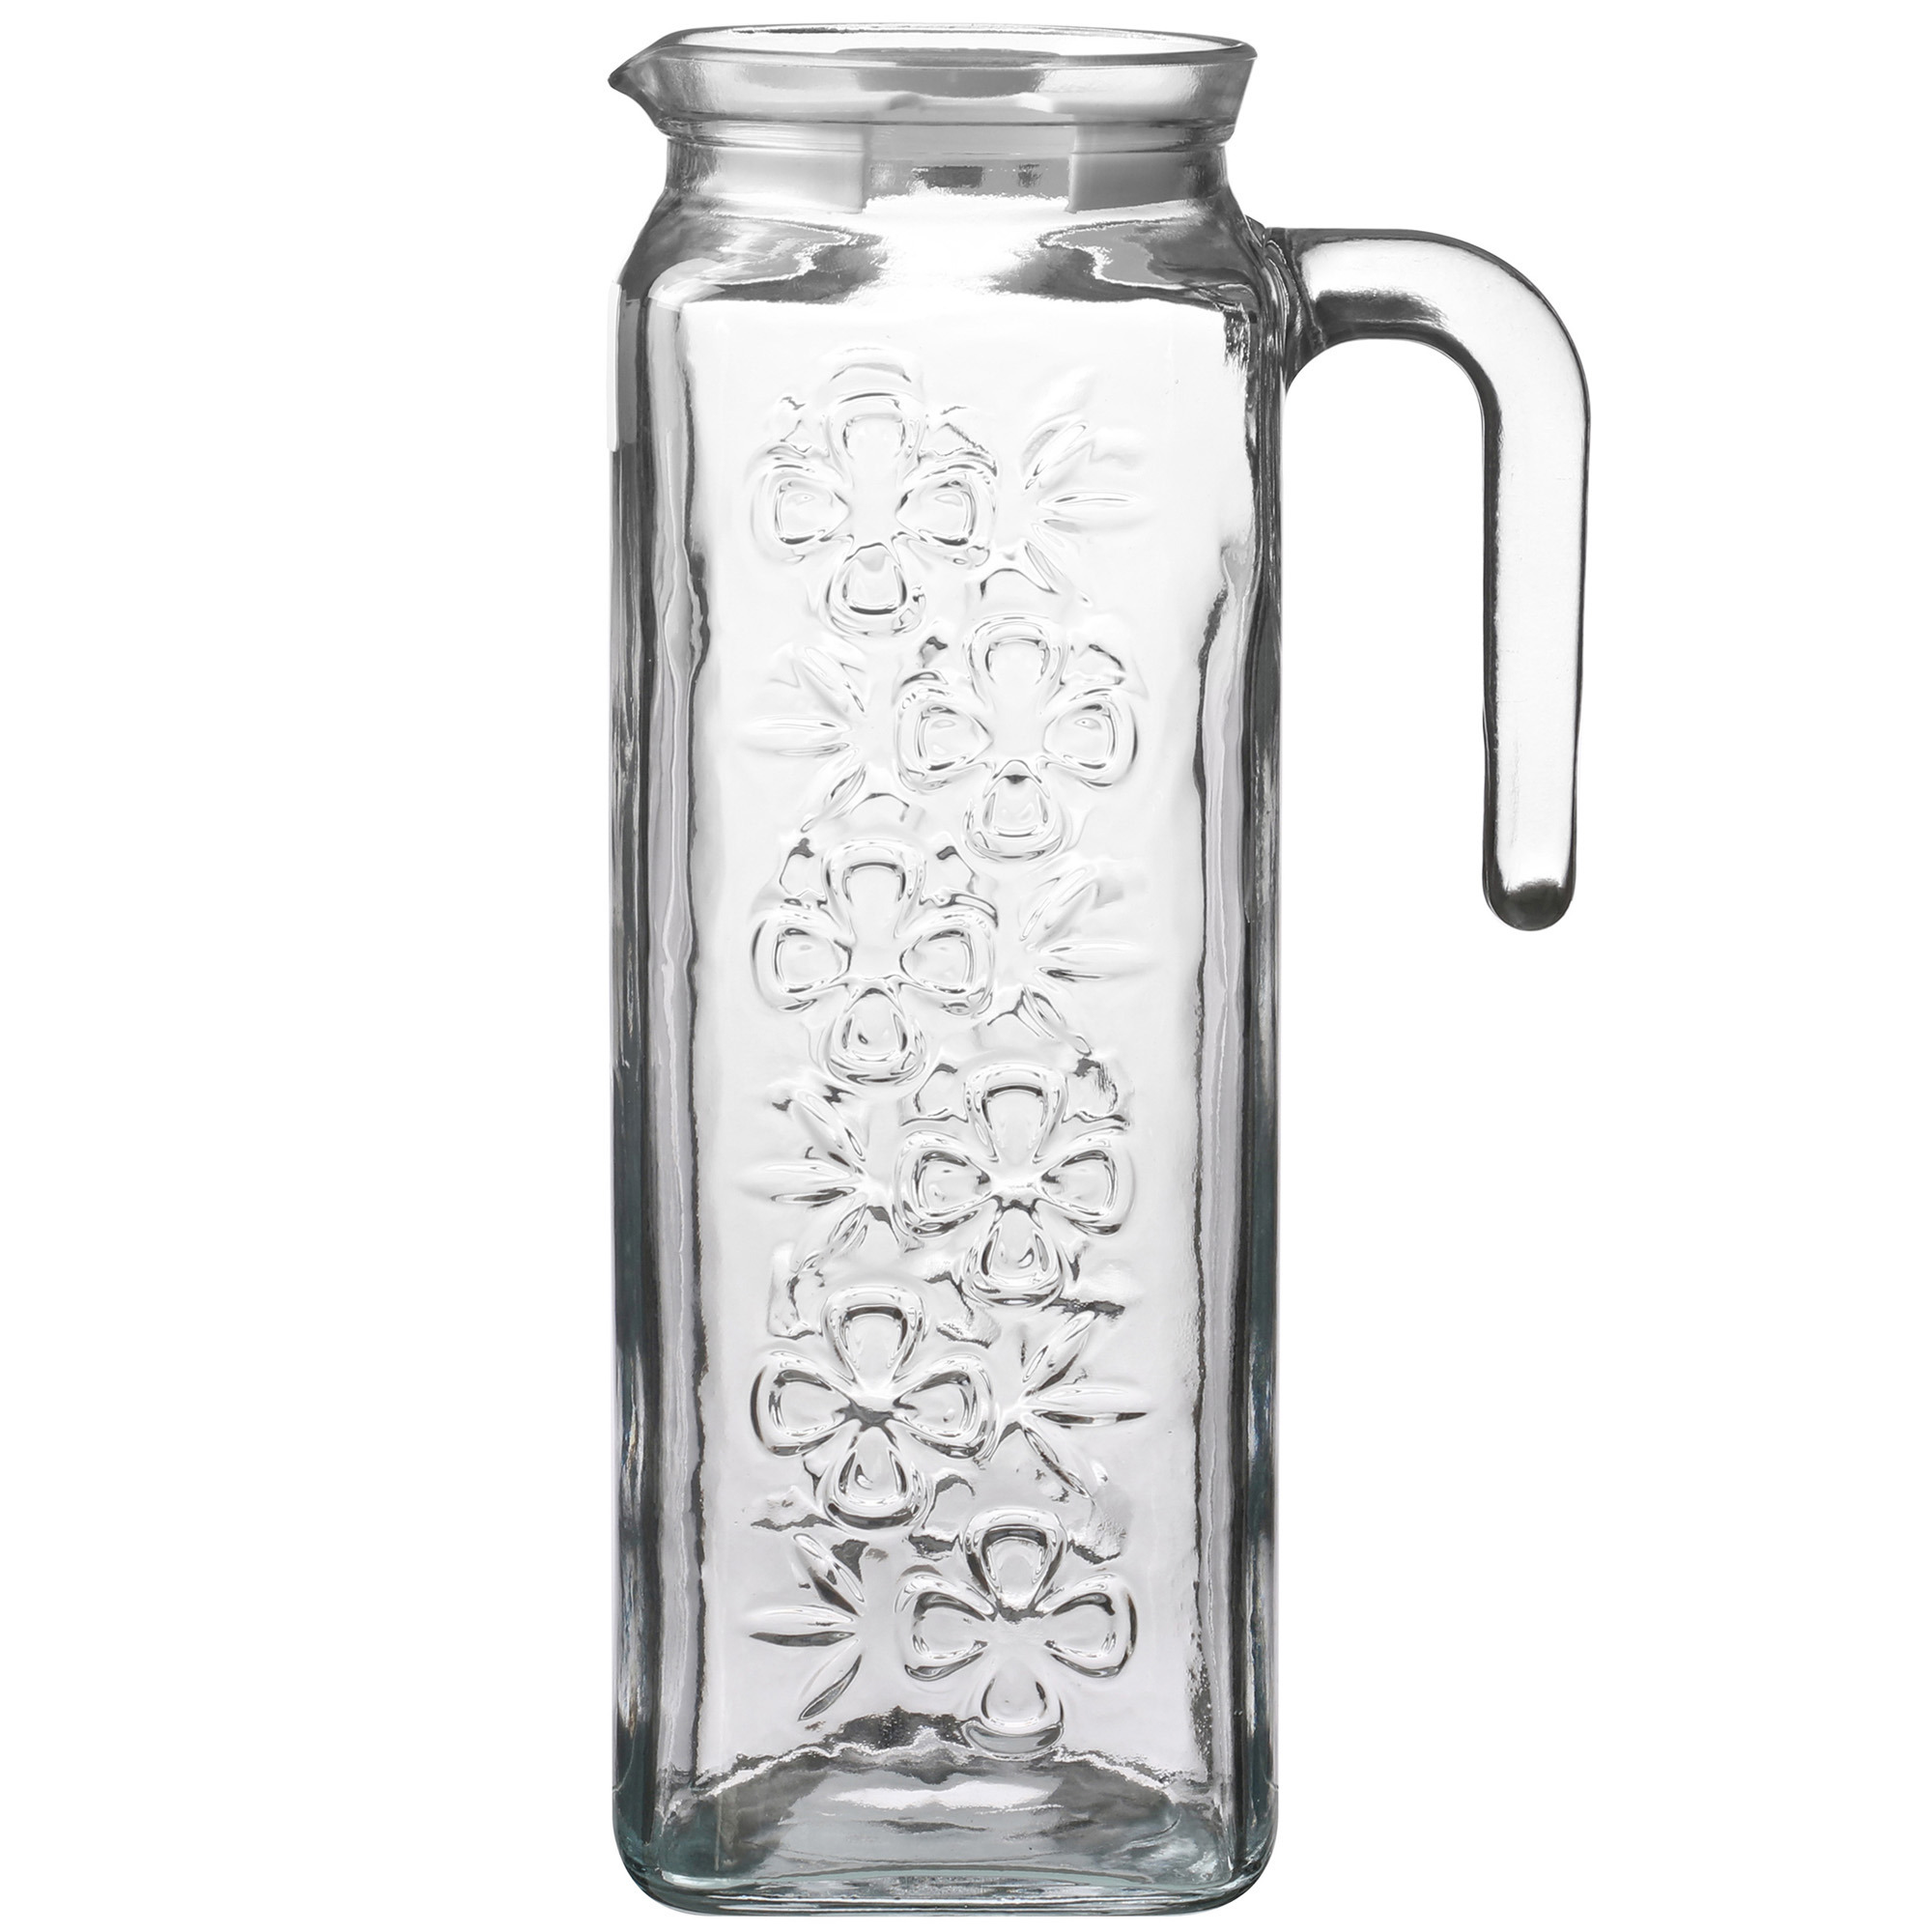 LAV Waterkan/sapkan karaf - gedecoreerd glas - transparant - met kunststof deksel - 1.2 liter -